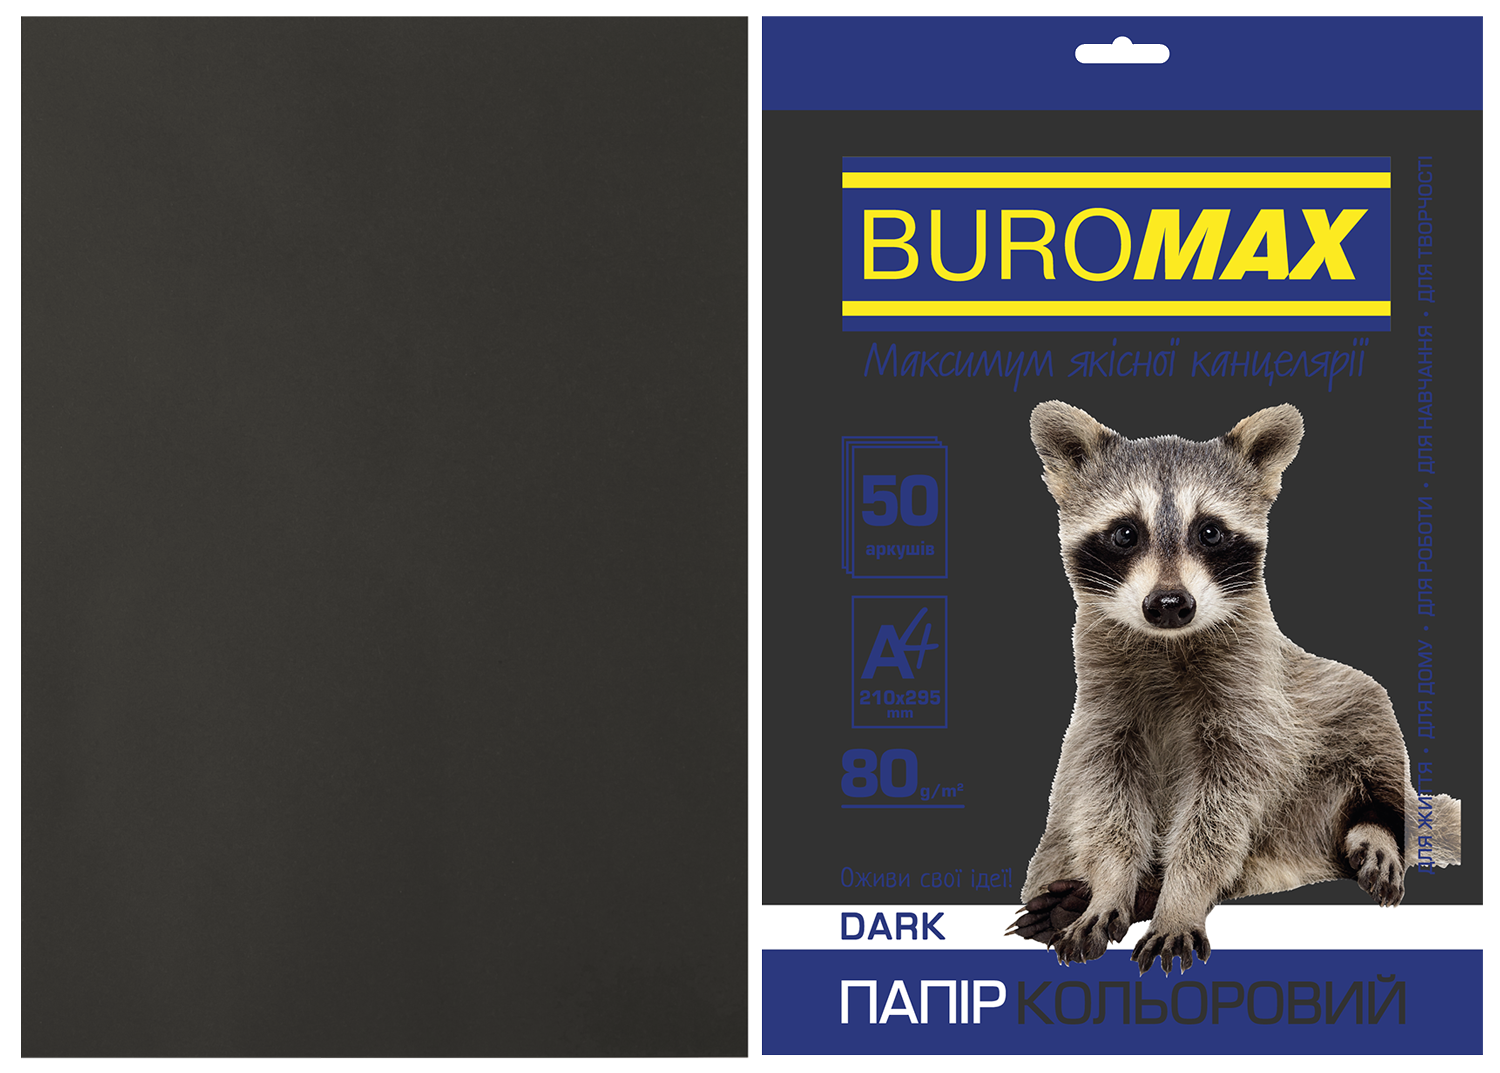 Набор цветной бумаги Buromax DARK А4, 80 г/м2, 50 листов, черный